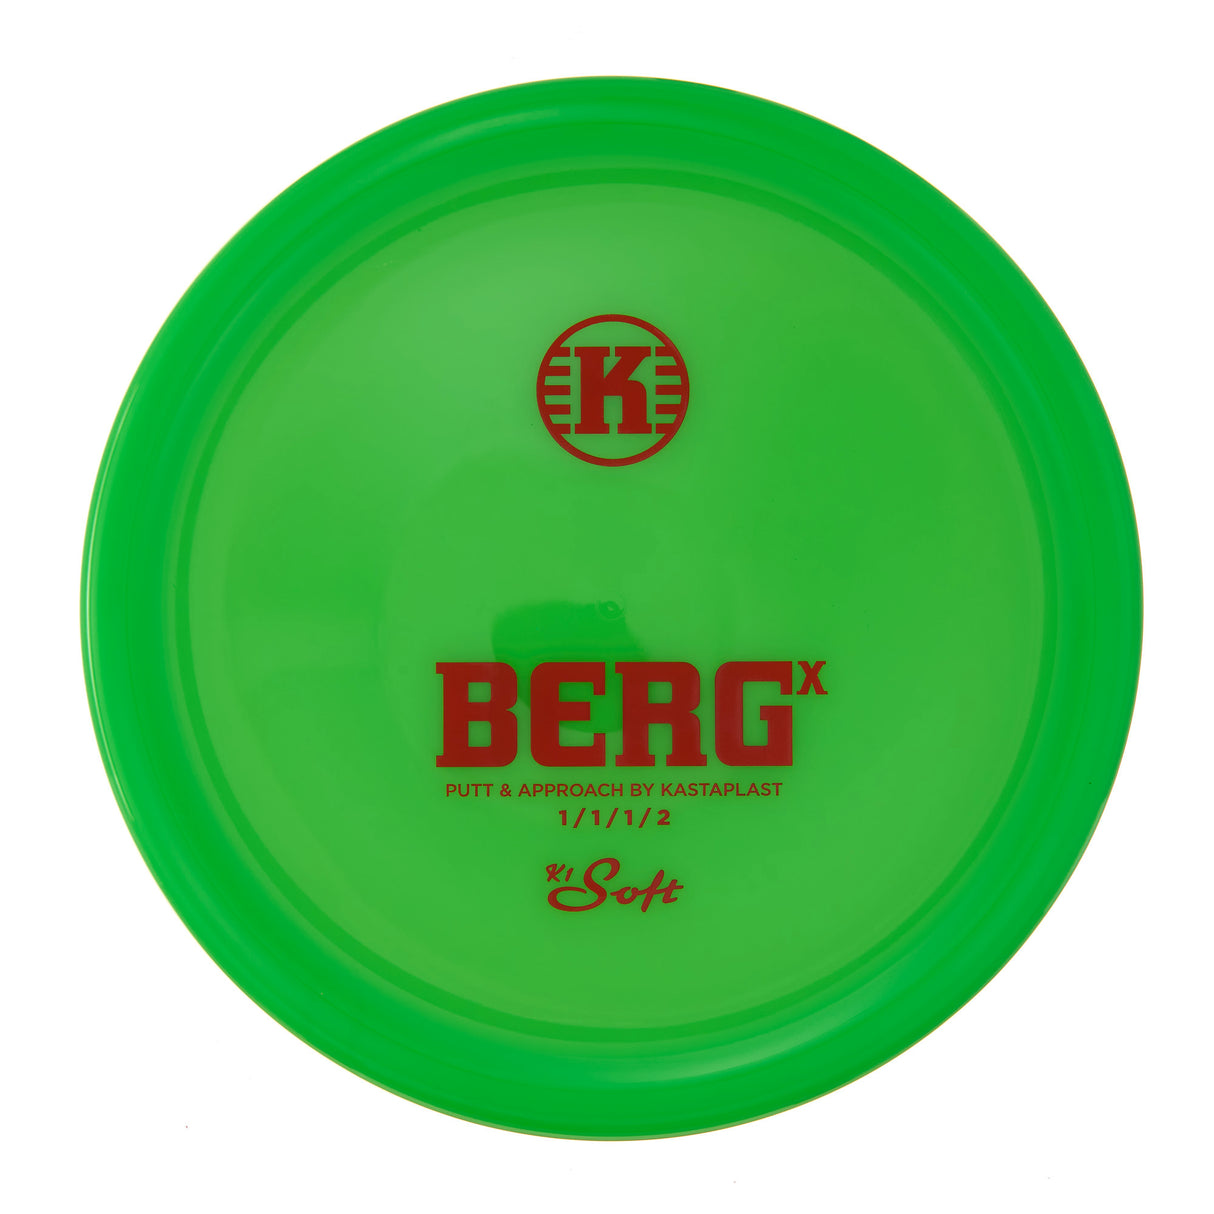 Kastaplast Berg X - K1 Soft 175g | Style 0003